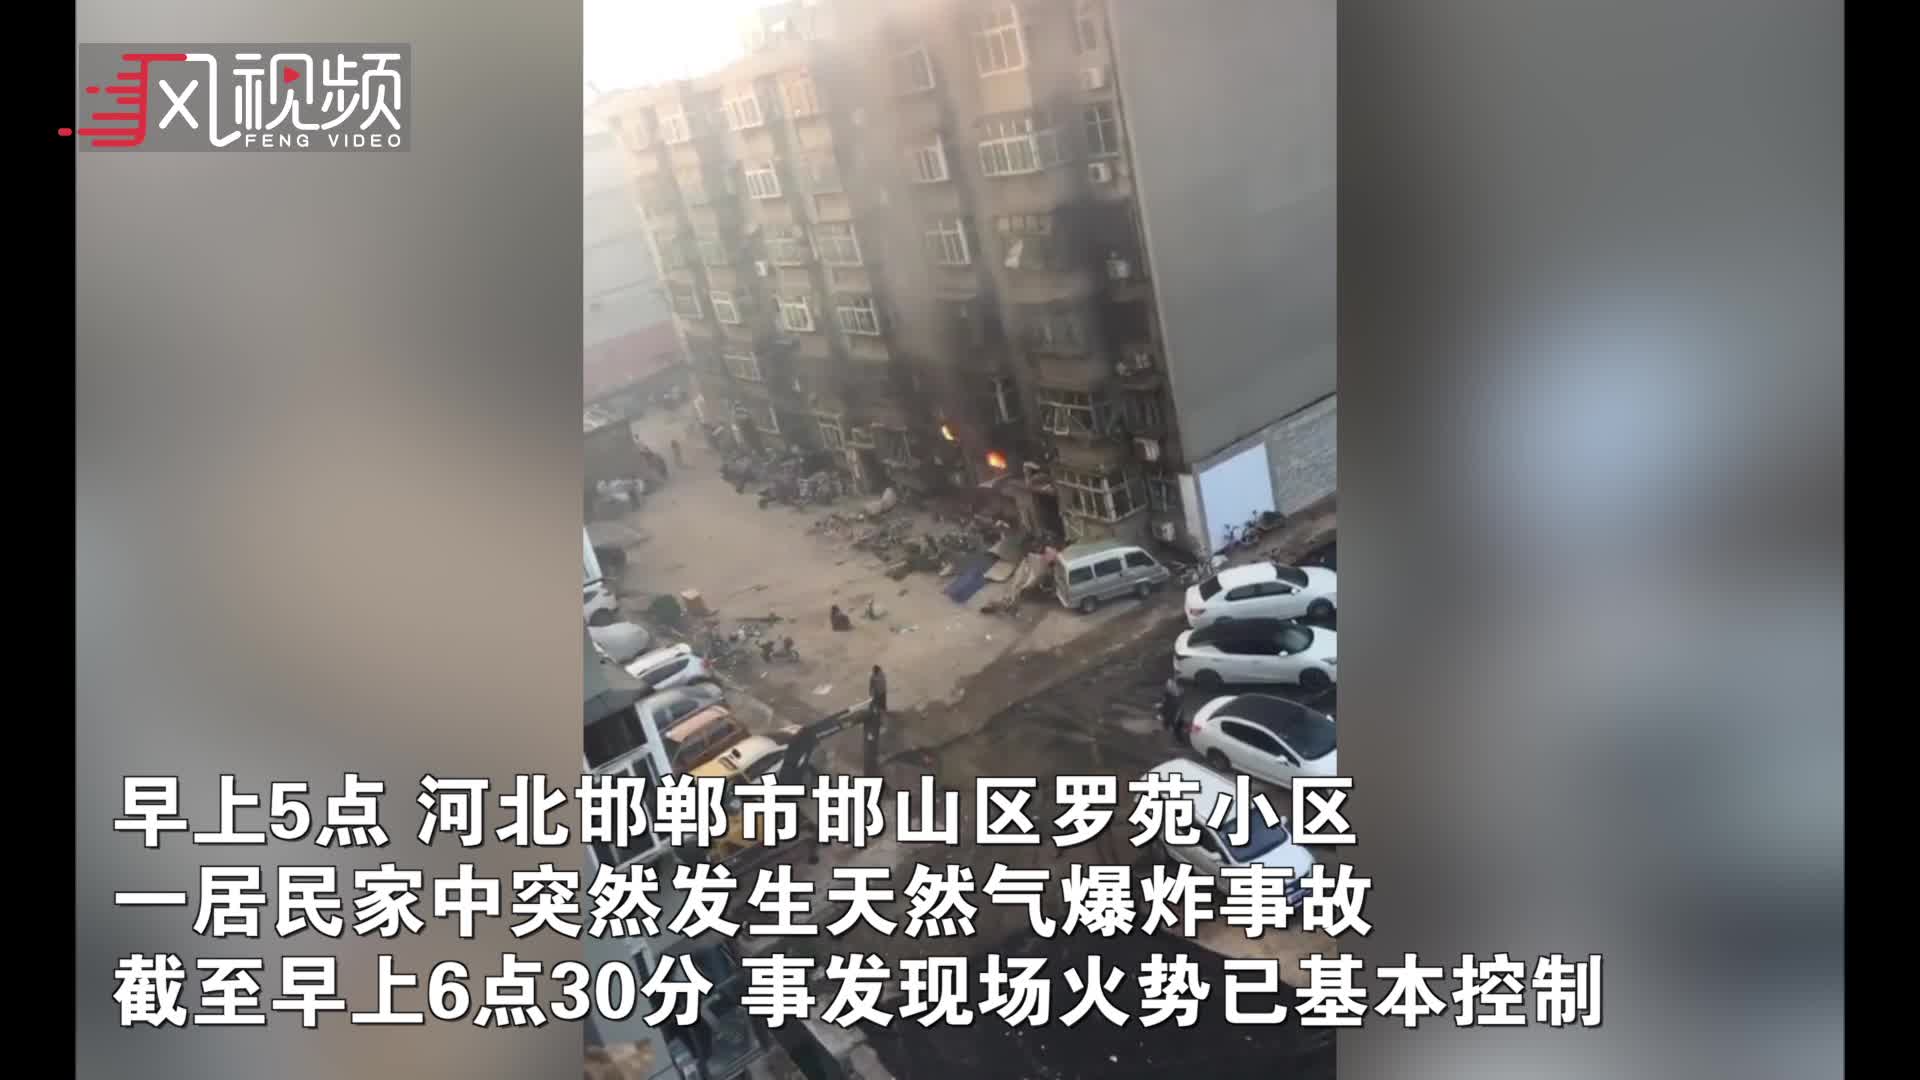 河北張家口半夜大爆炸 22死22傷燒毀50車 - 新唐人亞太電視台